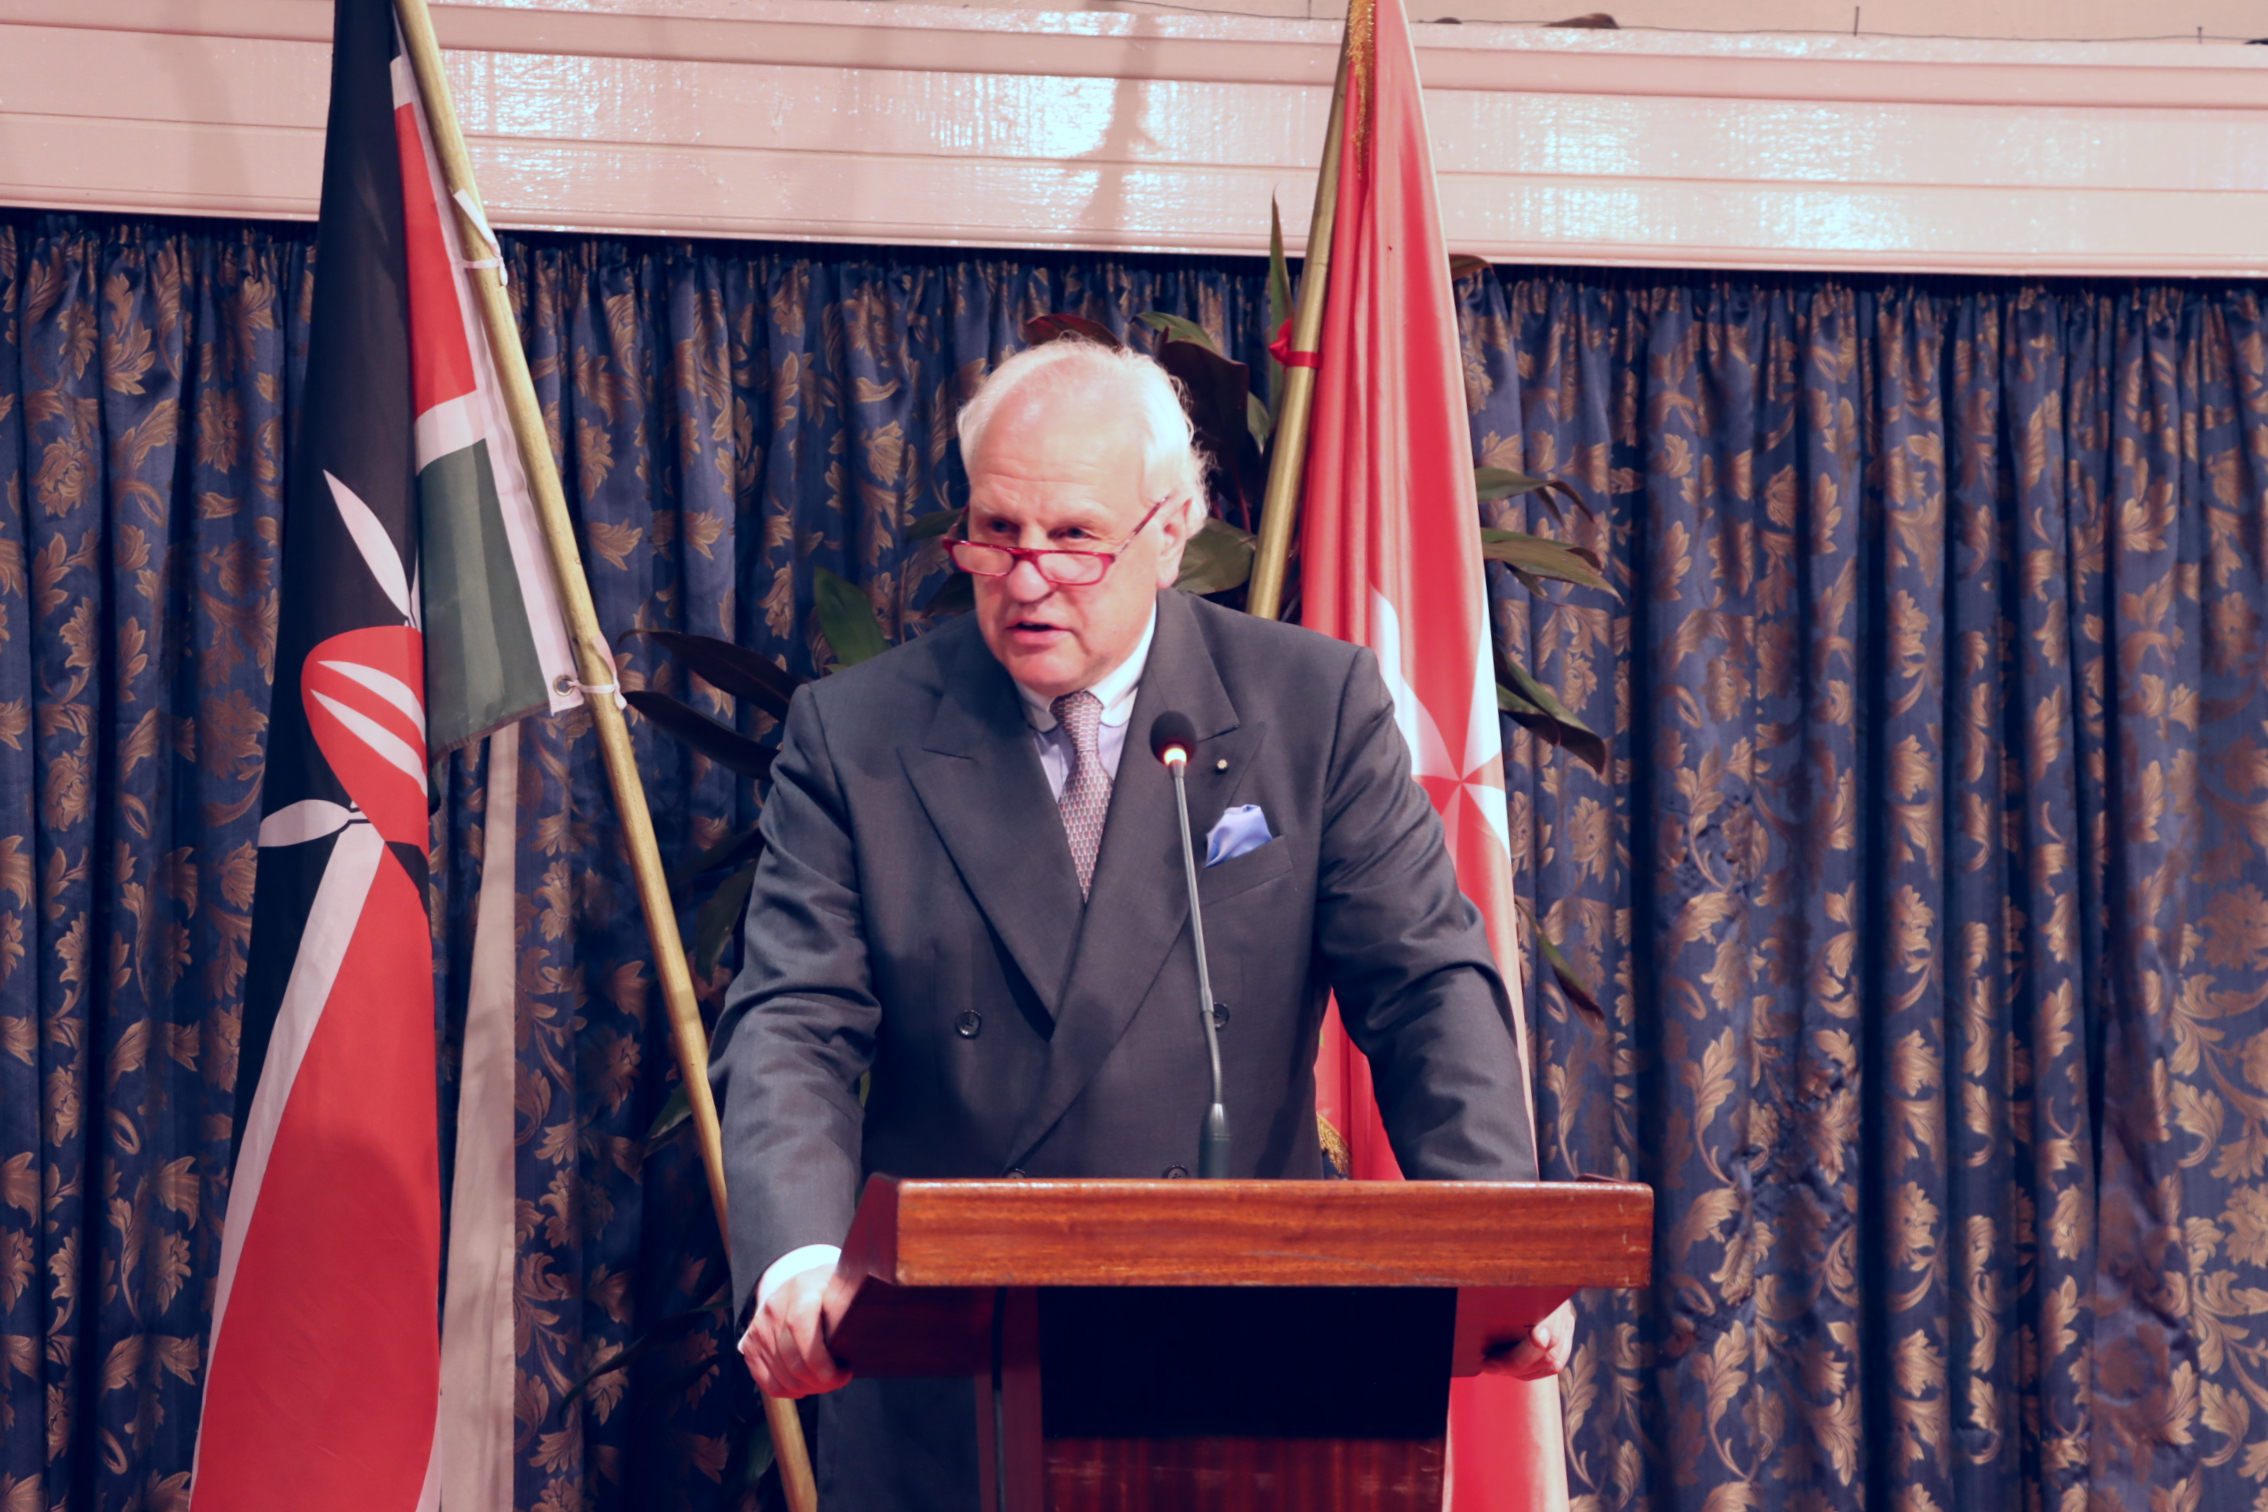 Ambassador Guest at Order’s National Day Celebrations in Kenya